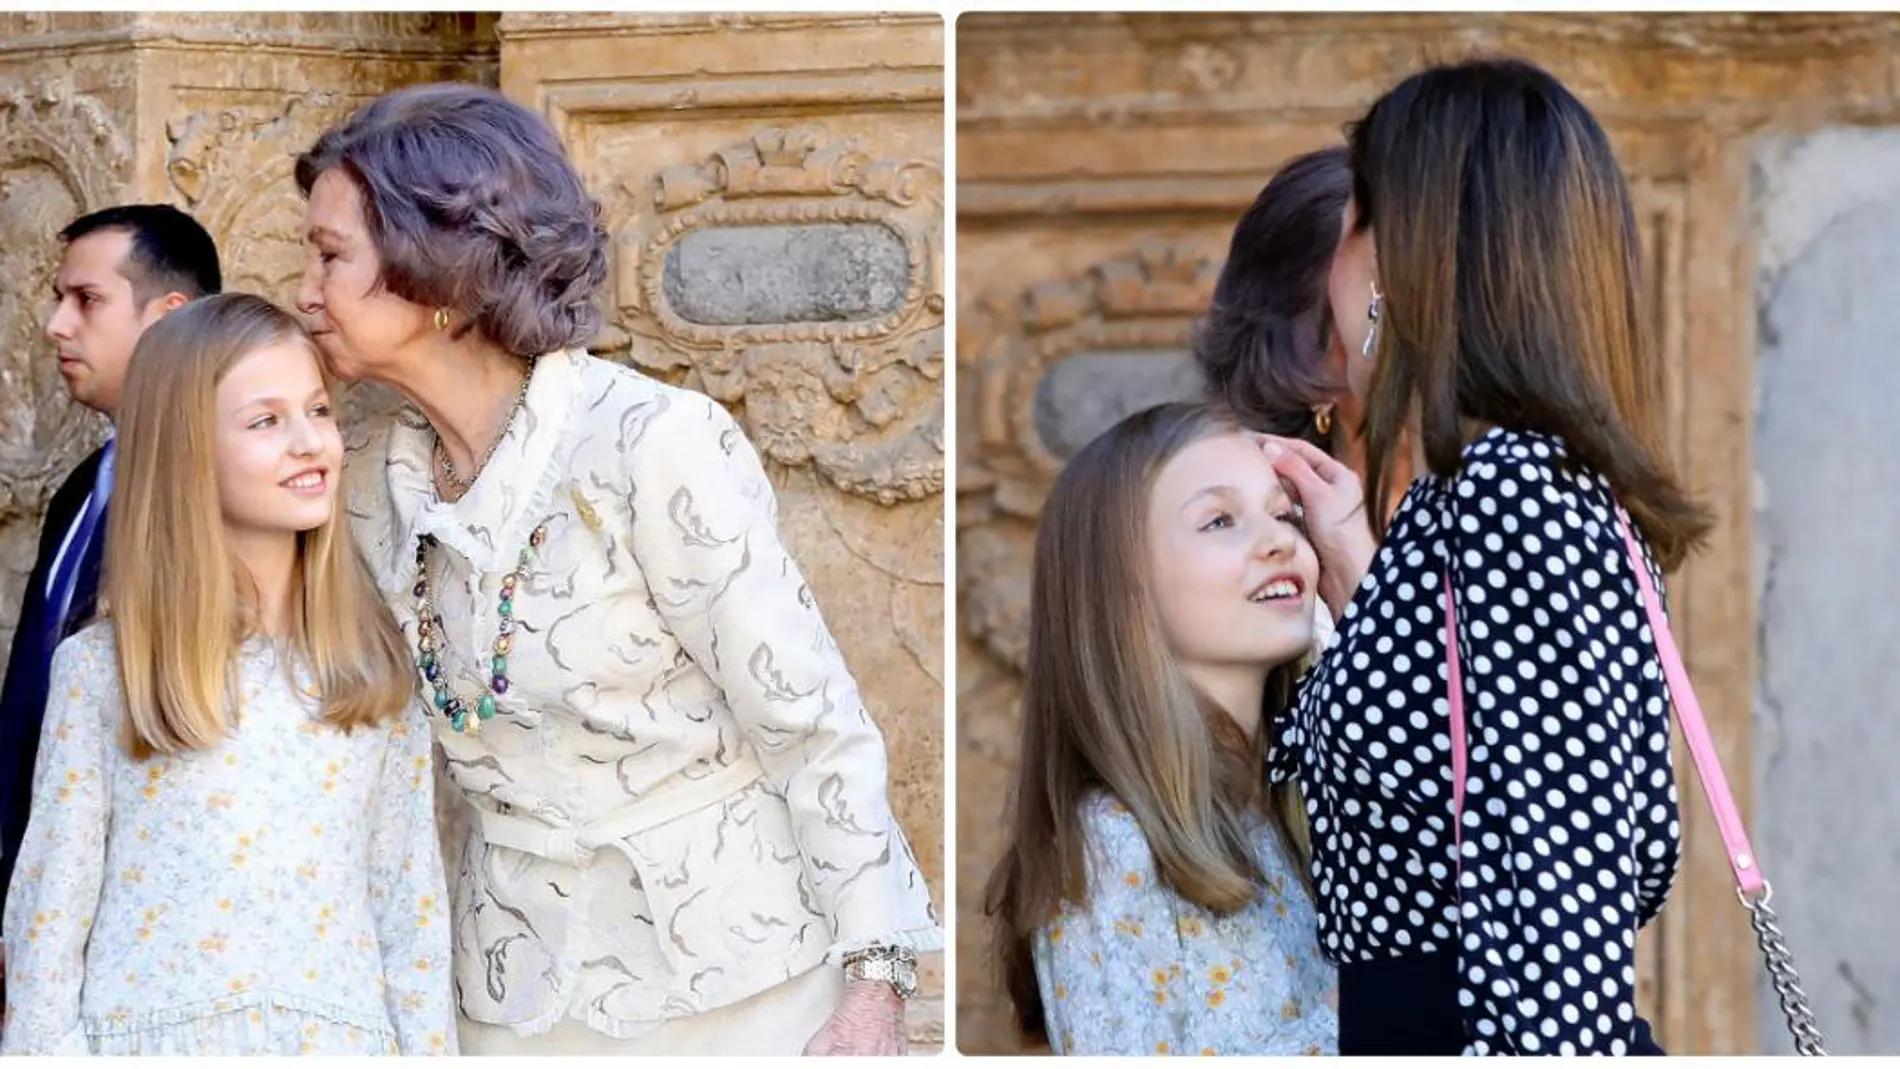 La reina Letizia limpia un beso de la cara de doña Leonor. GTRES